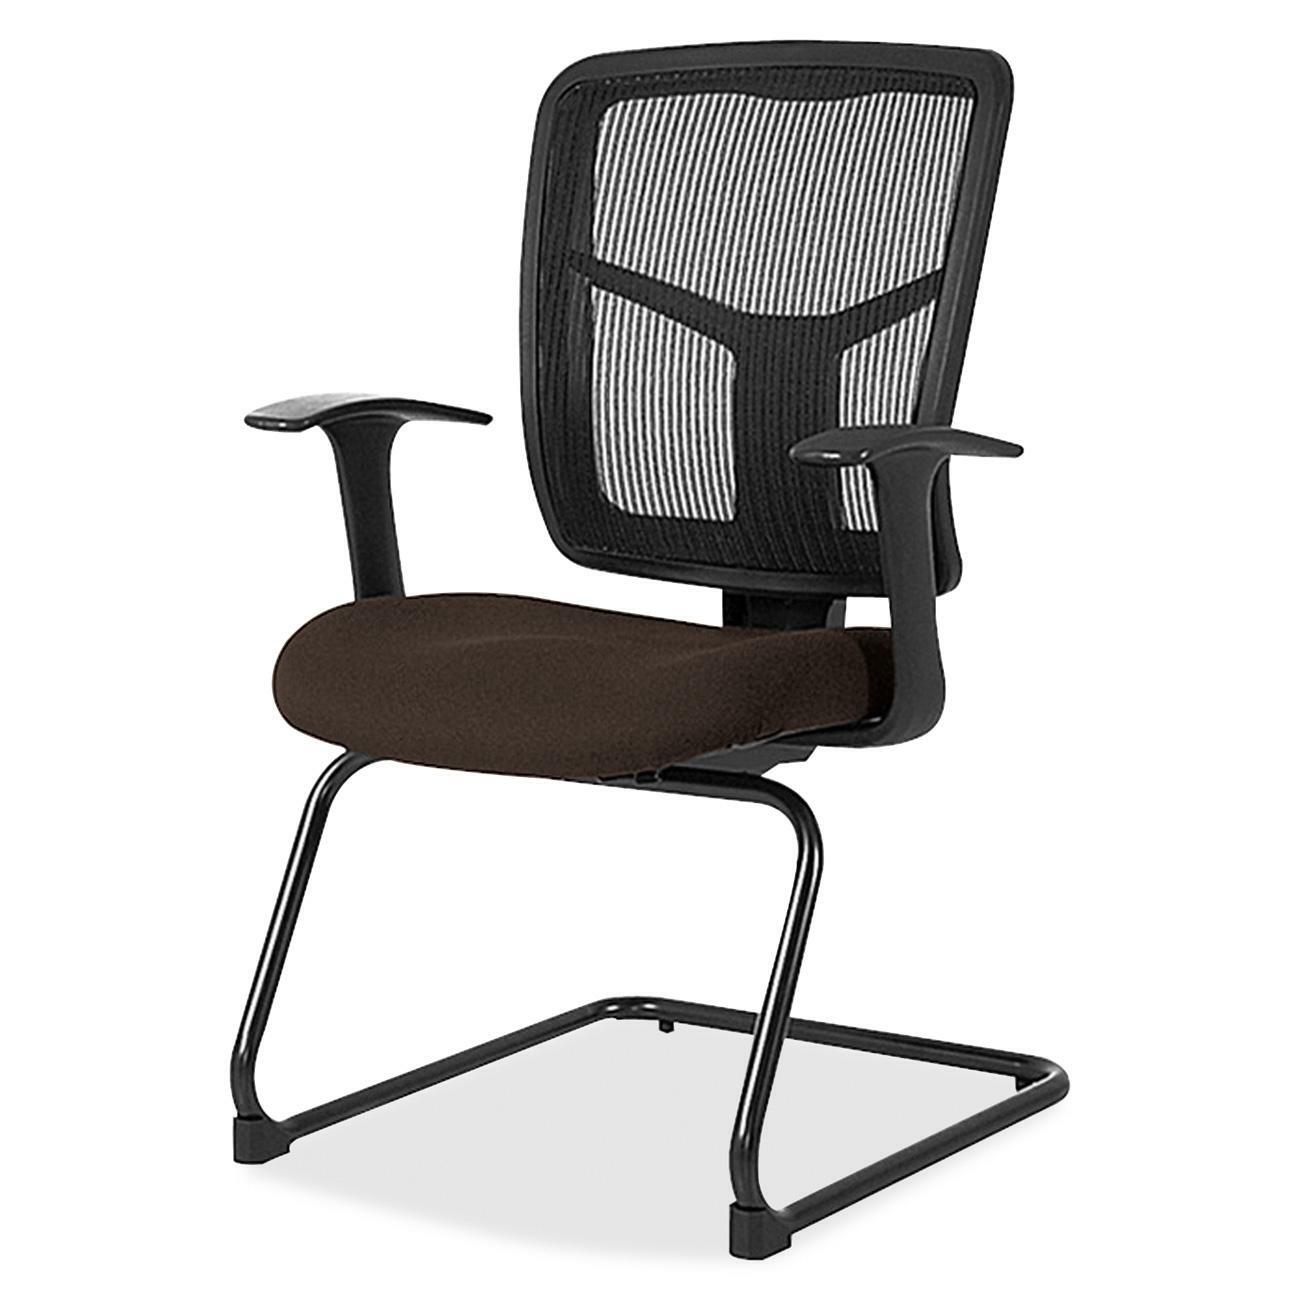 DC-Lex-001 Chair